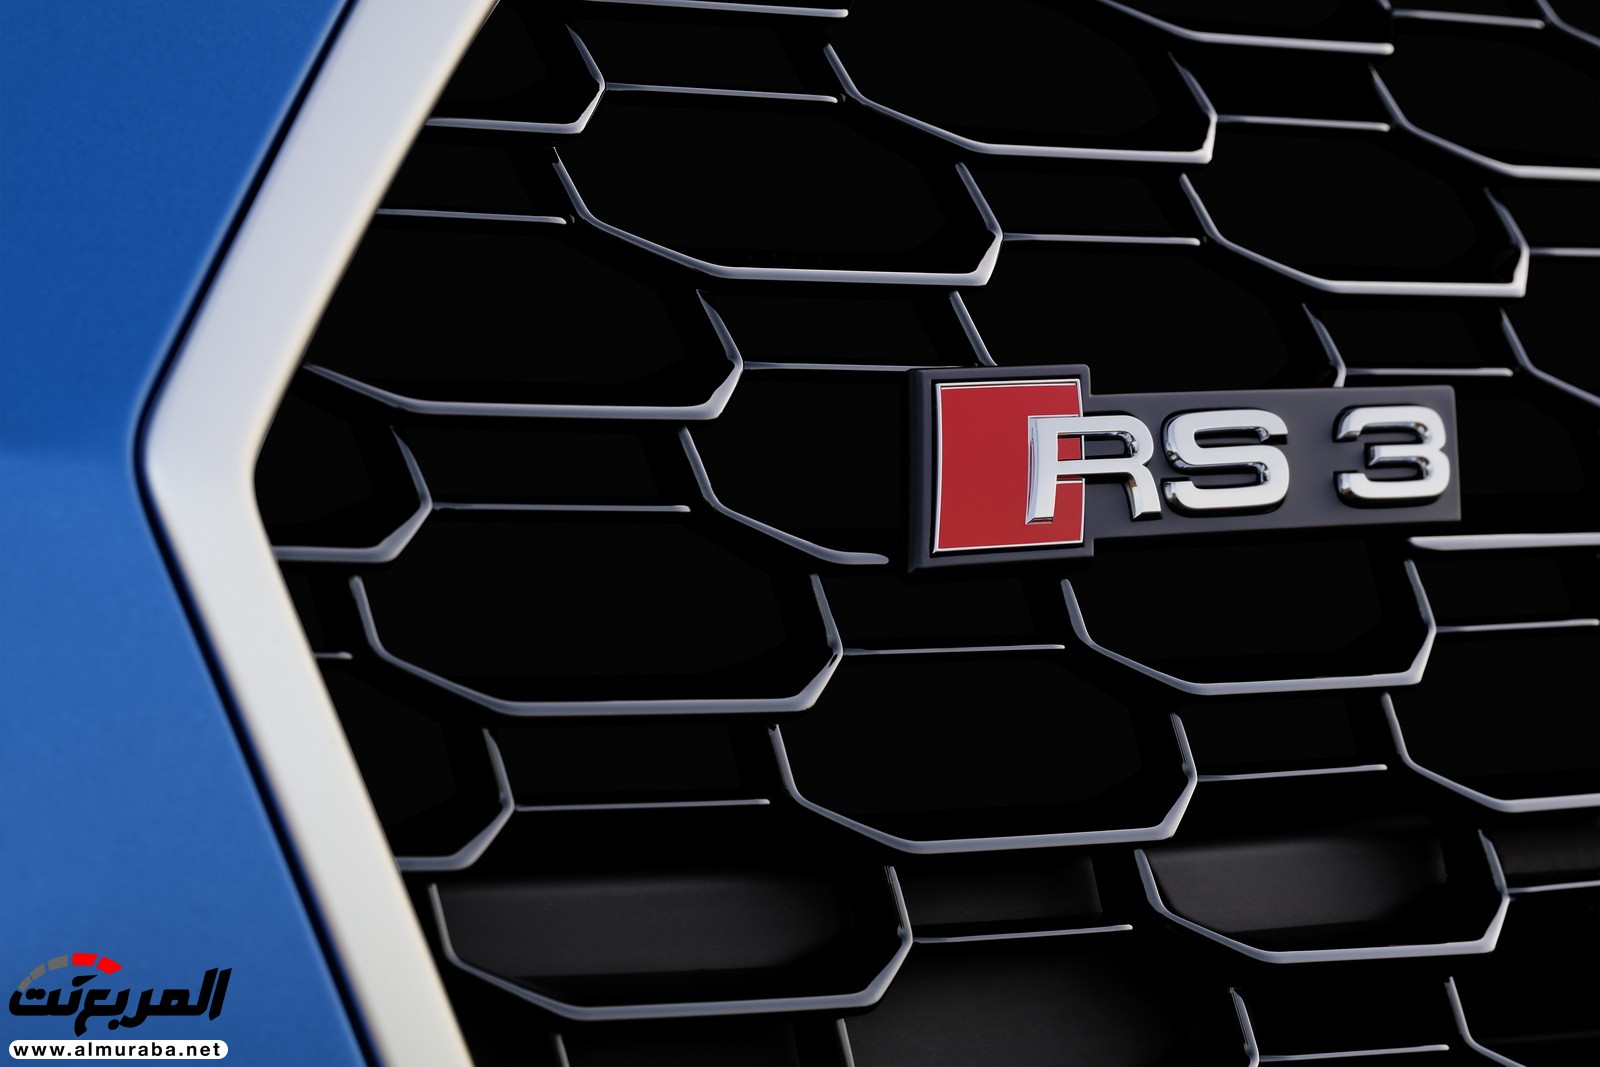 "أودي" تكشف عن RS3 الجديدة كليا 2018 بقوة 395 حصان Audi 28